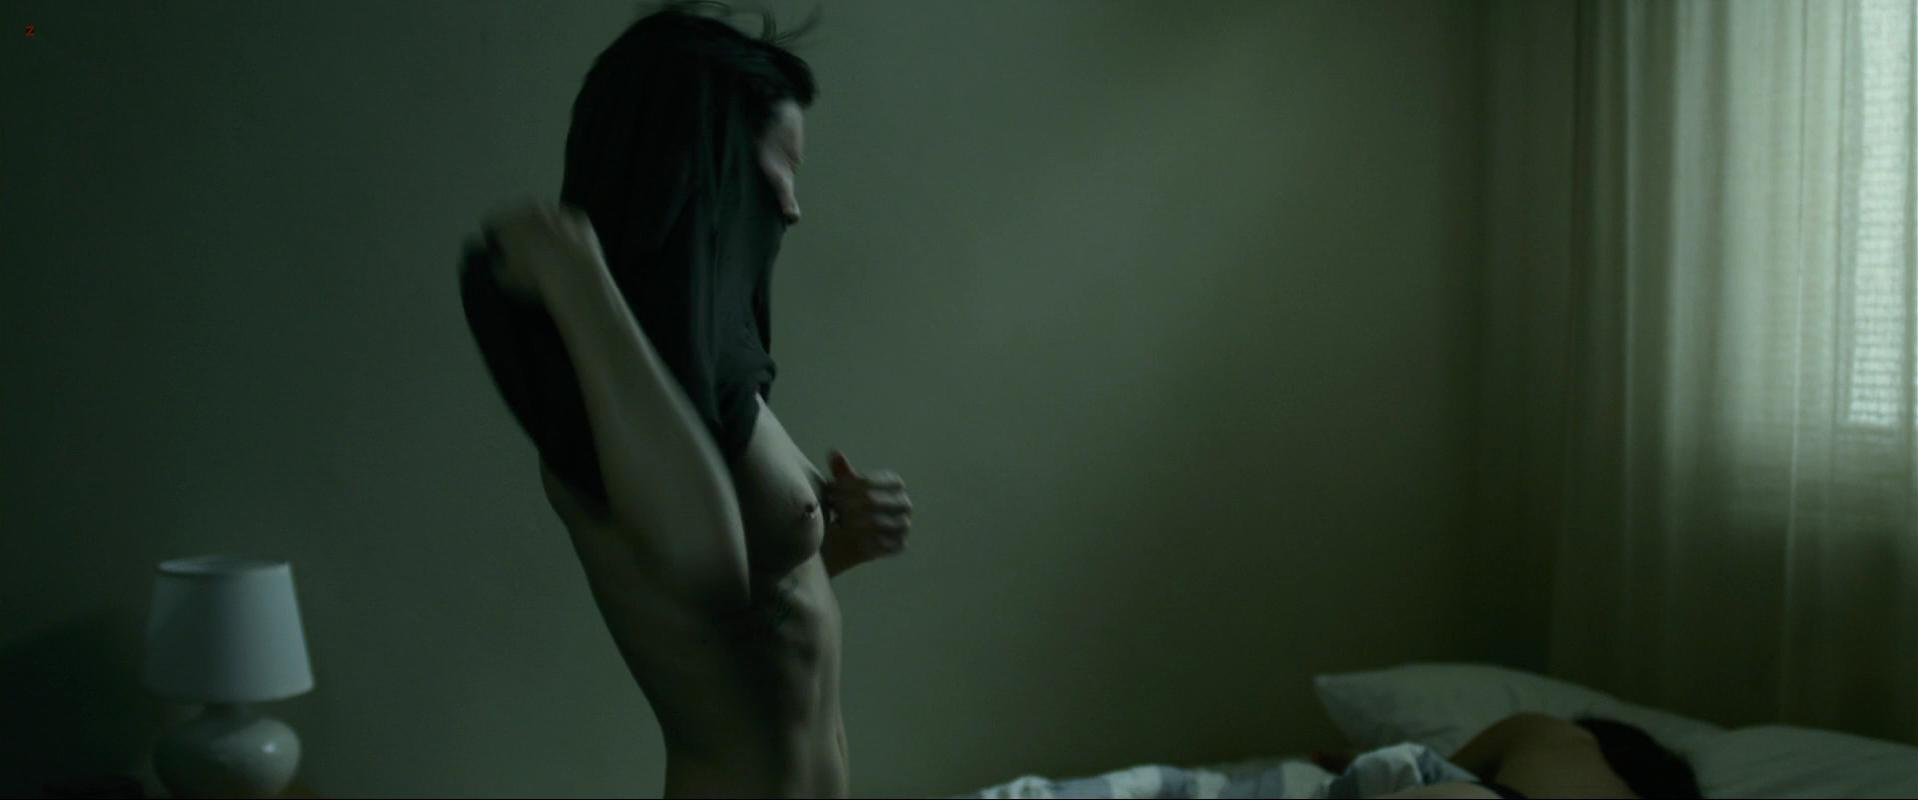 Nude Video Celebs Actress Rooney Mara